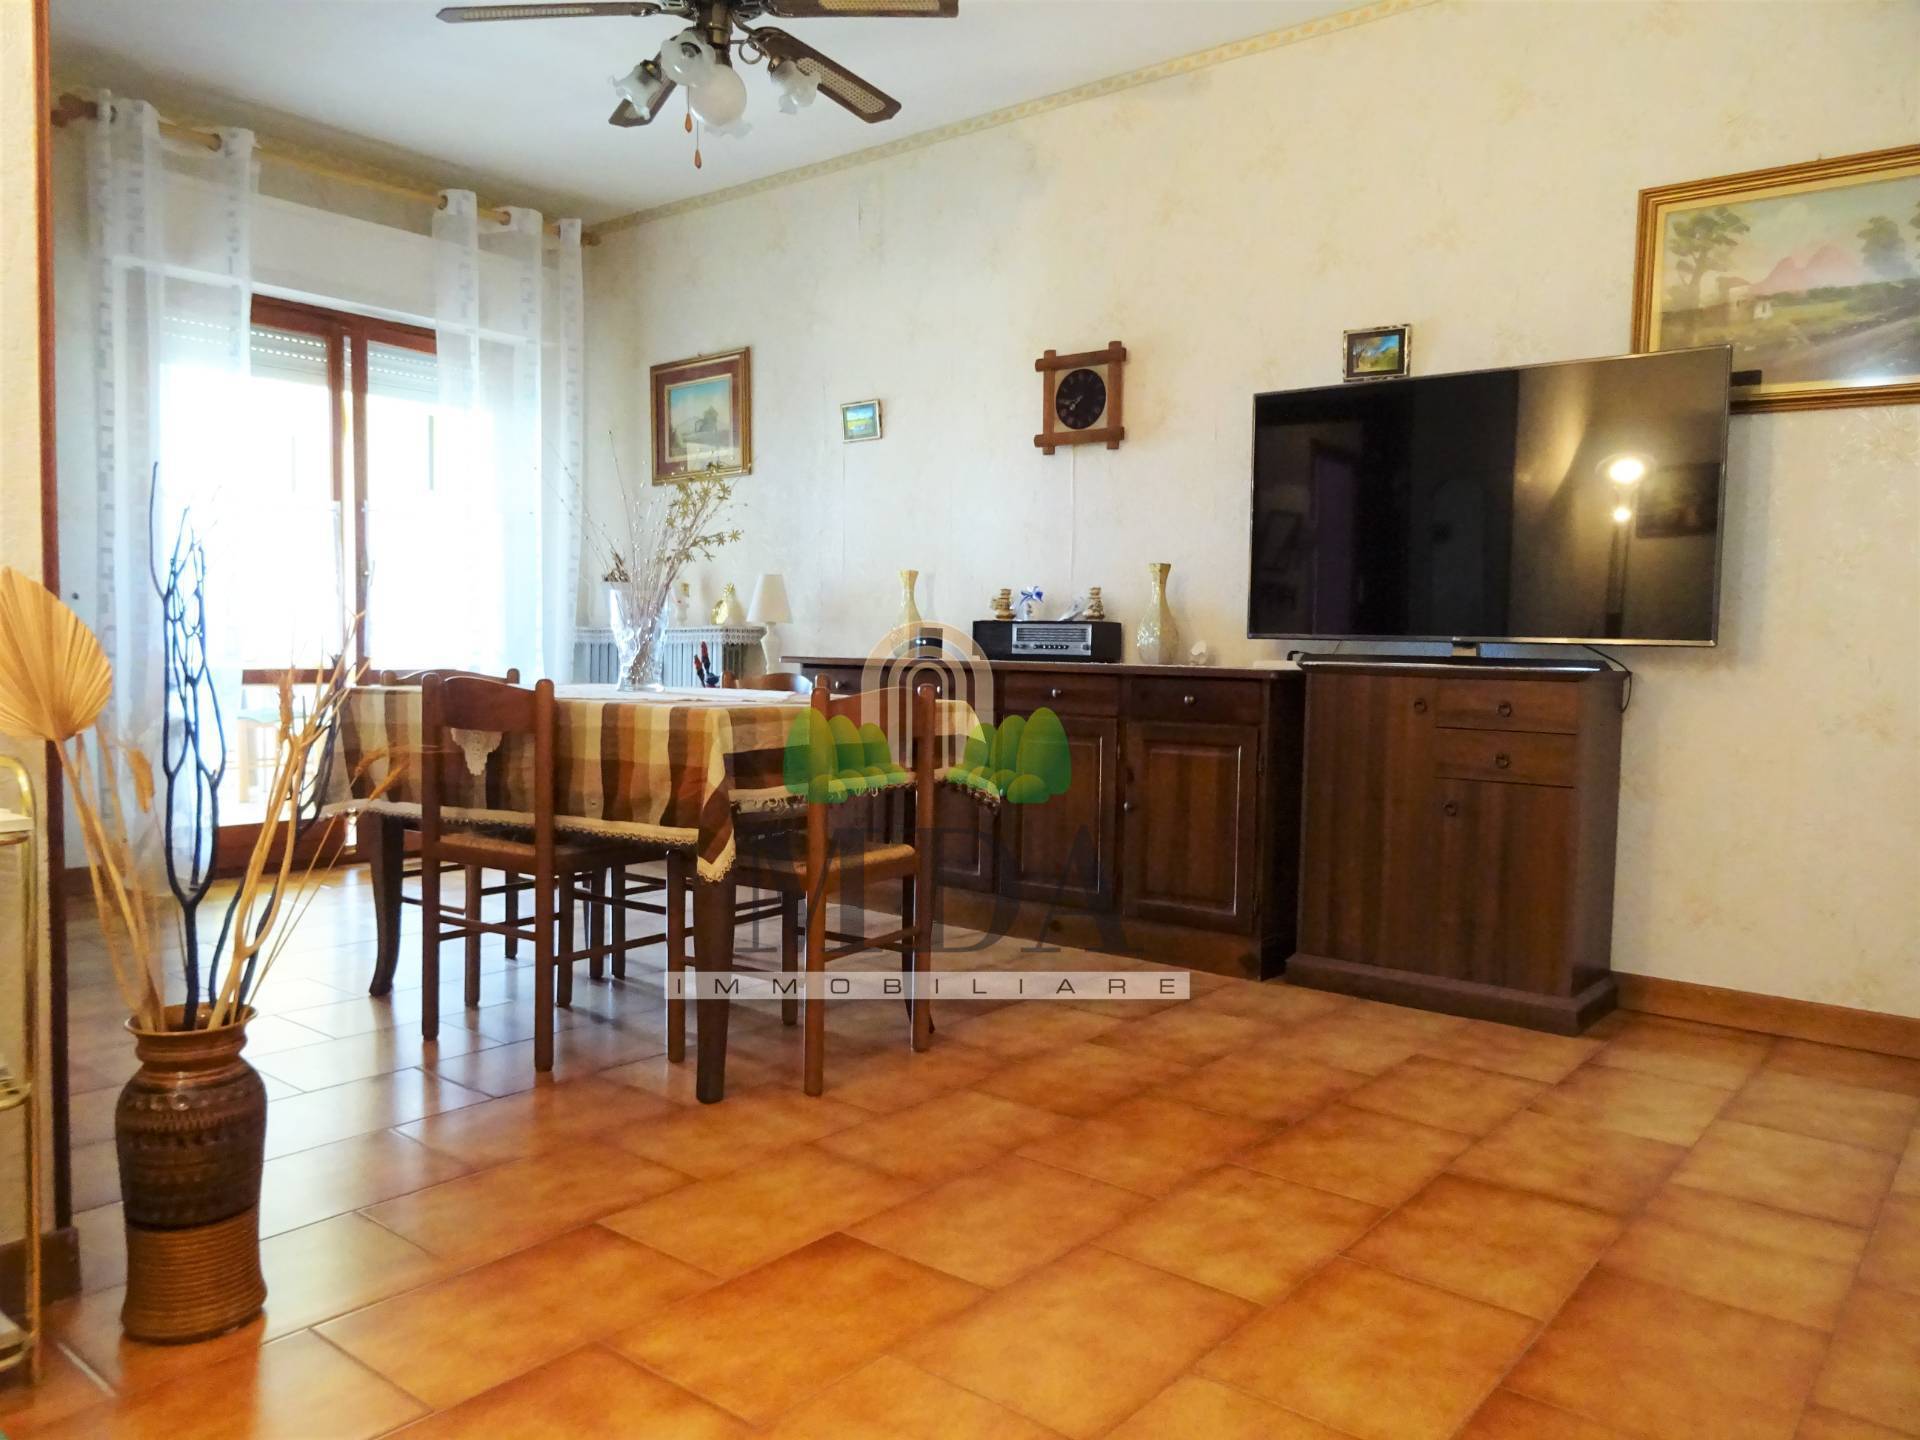 Appartamento in vendita a Martinsicuro, 4 locali, zona Località: VillaRosa, prezzo € 68.000 | PortaleAgenzieImmobiliari.it